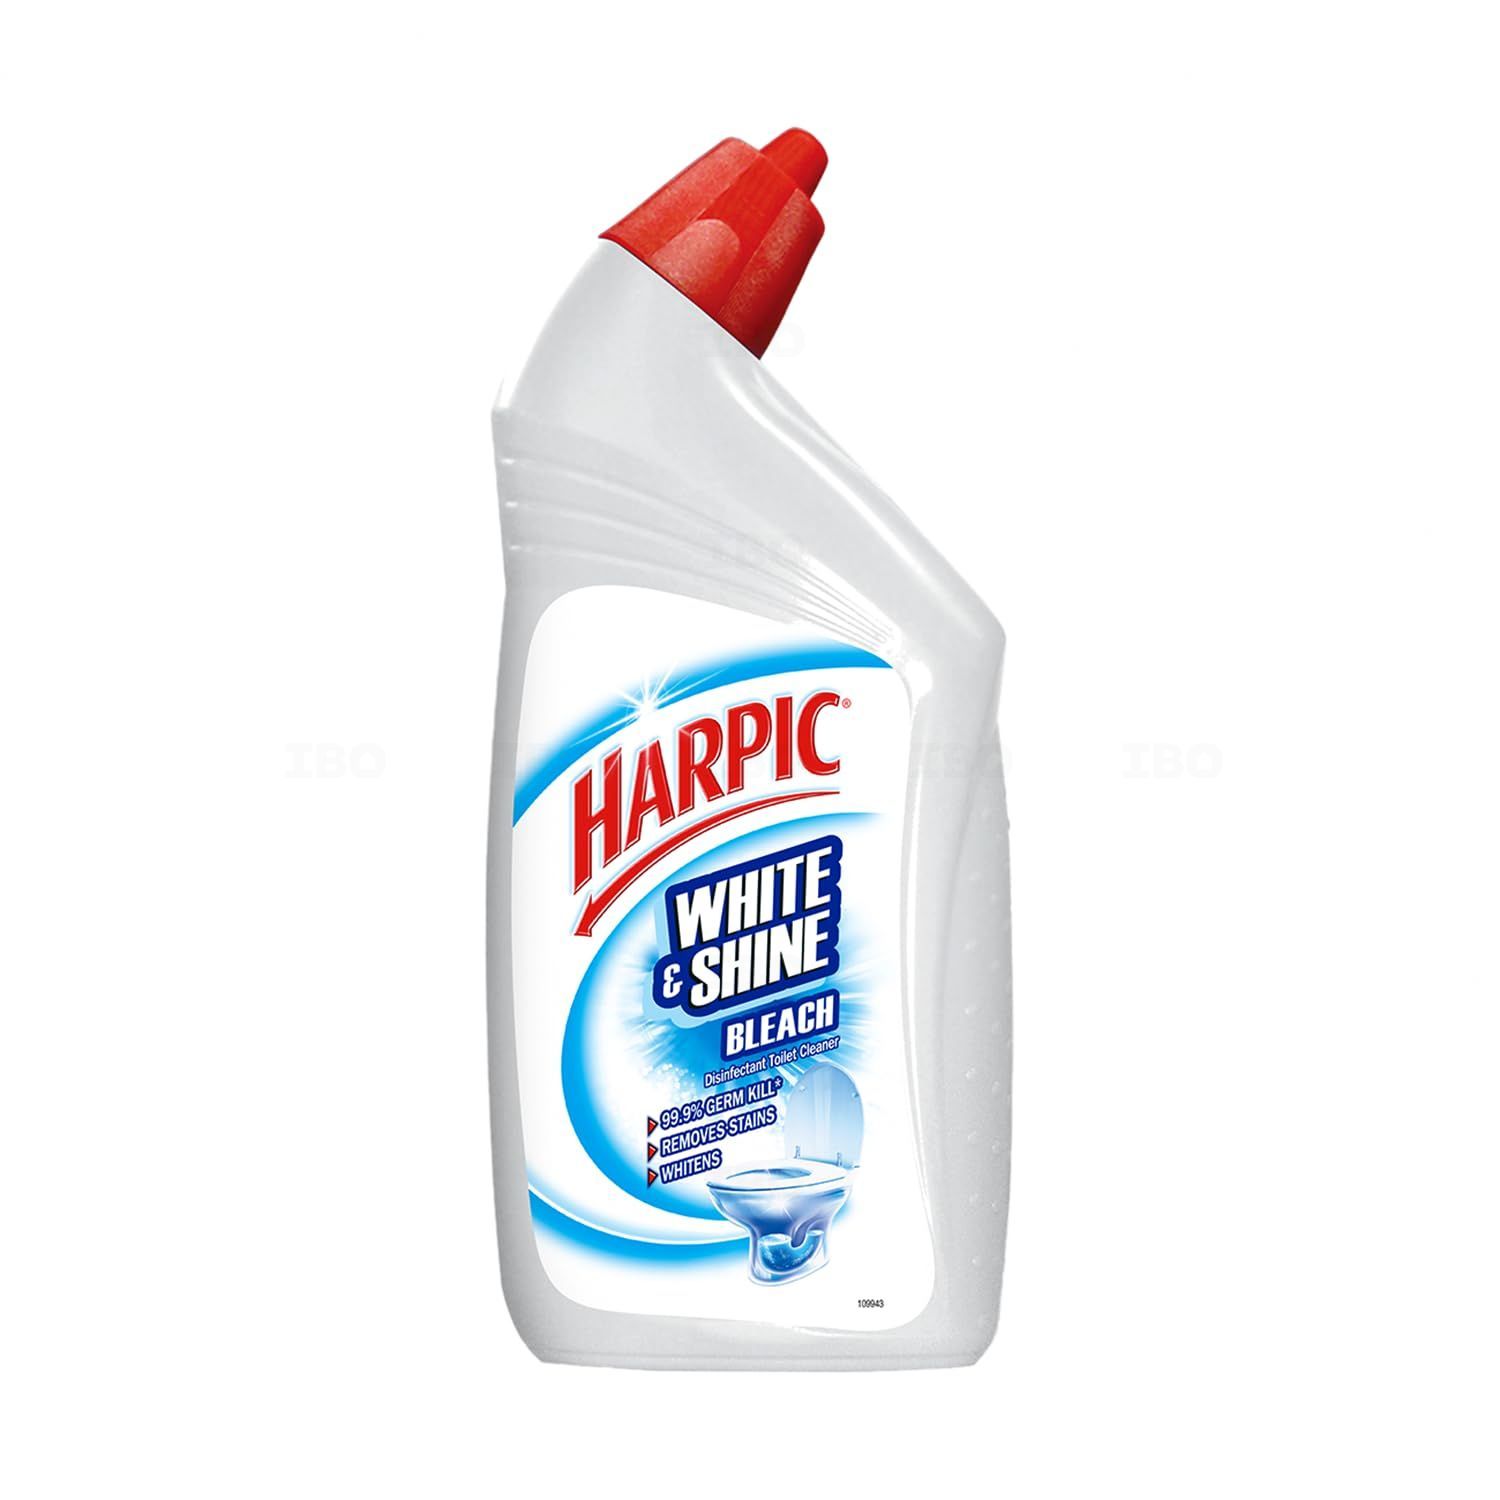 Harpic Disinfectant Toilet Cleaner Bleach White & Shine 1ltr